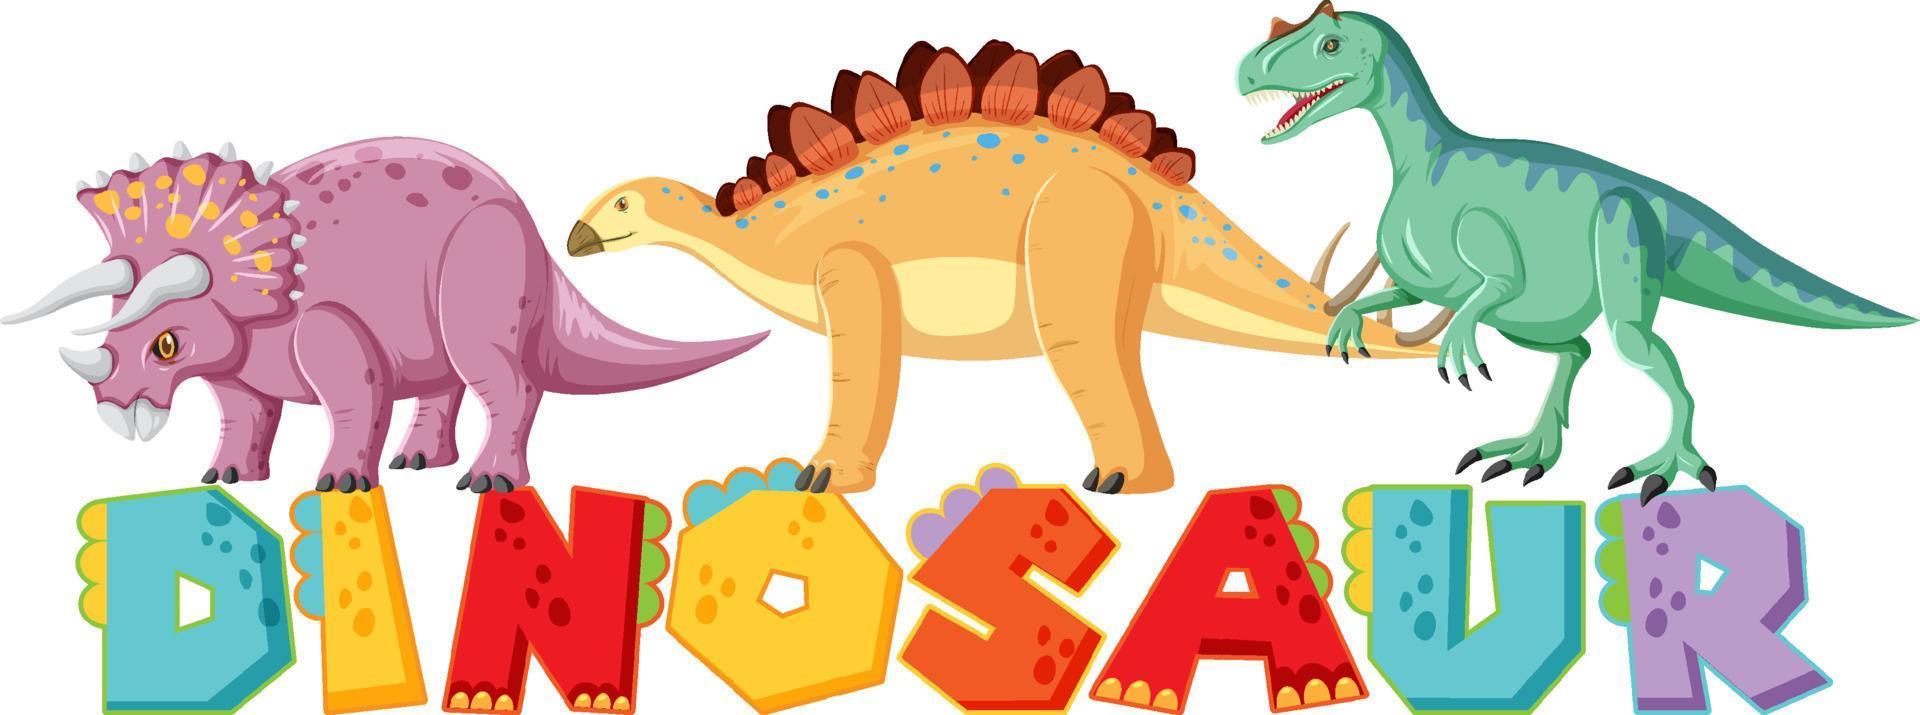 diseño de fuente para palabra dinosaurio vector